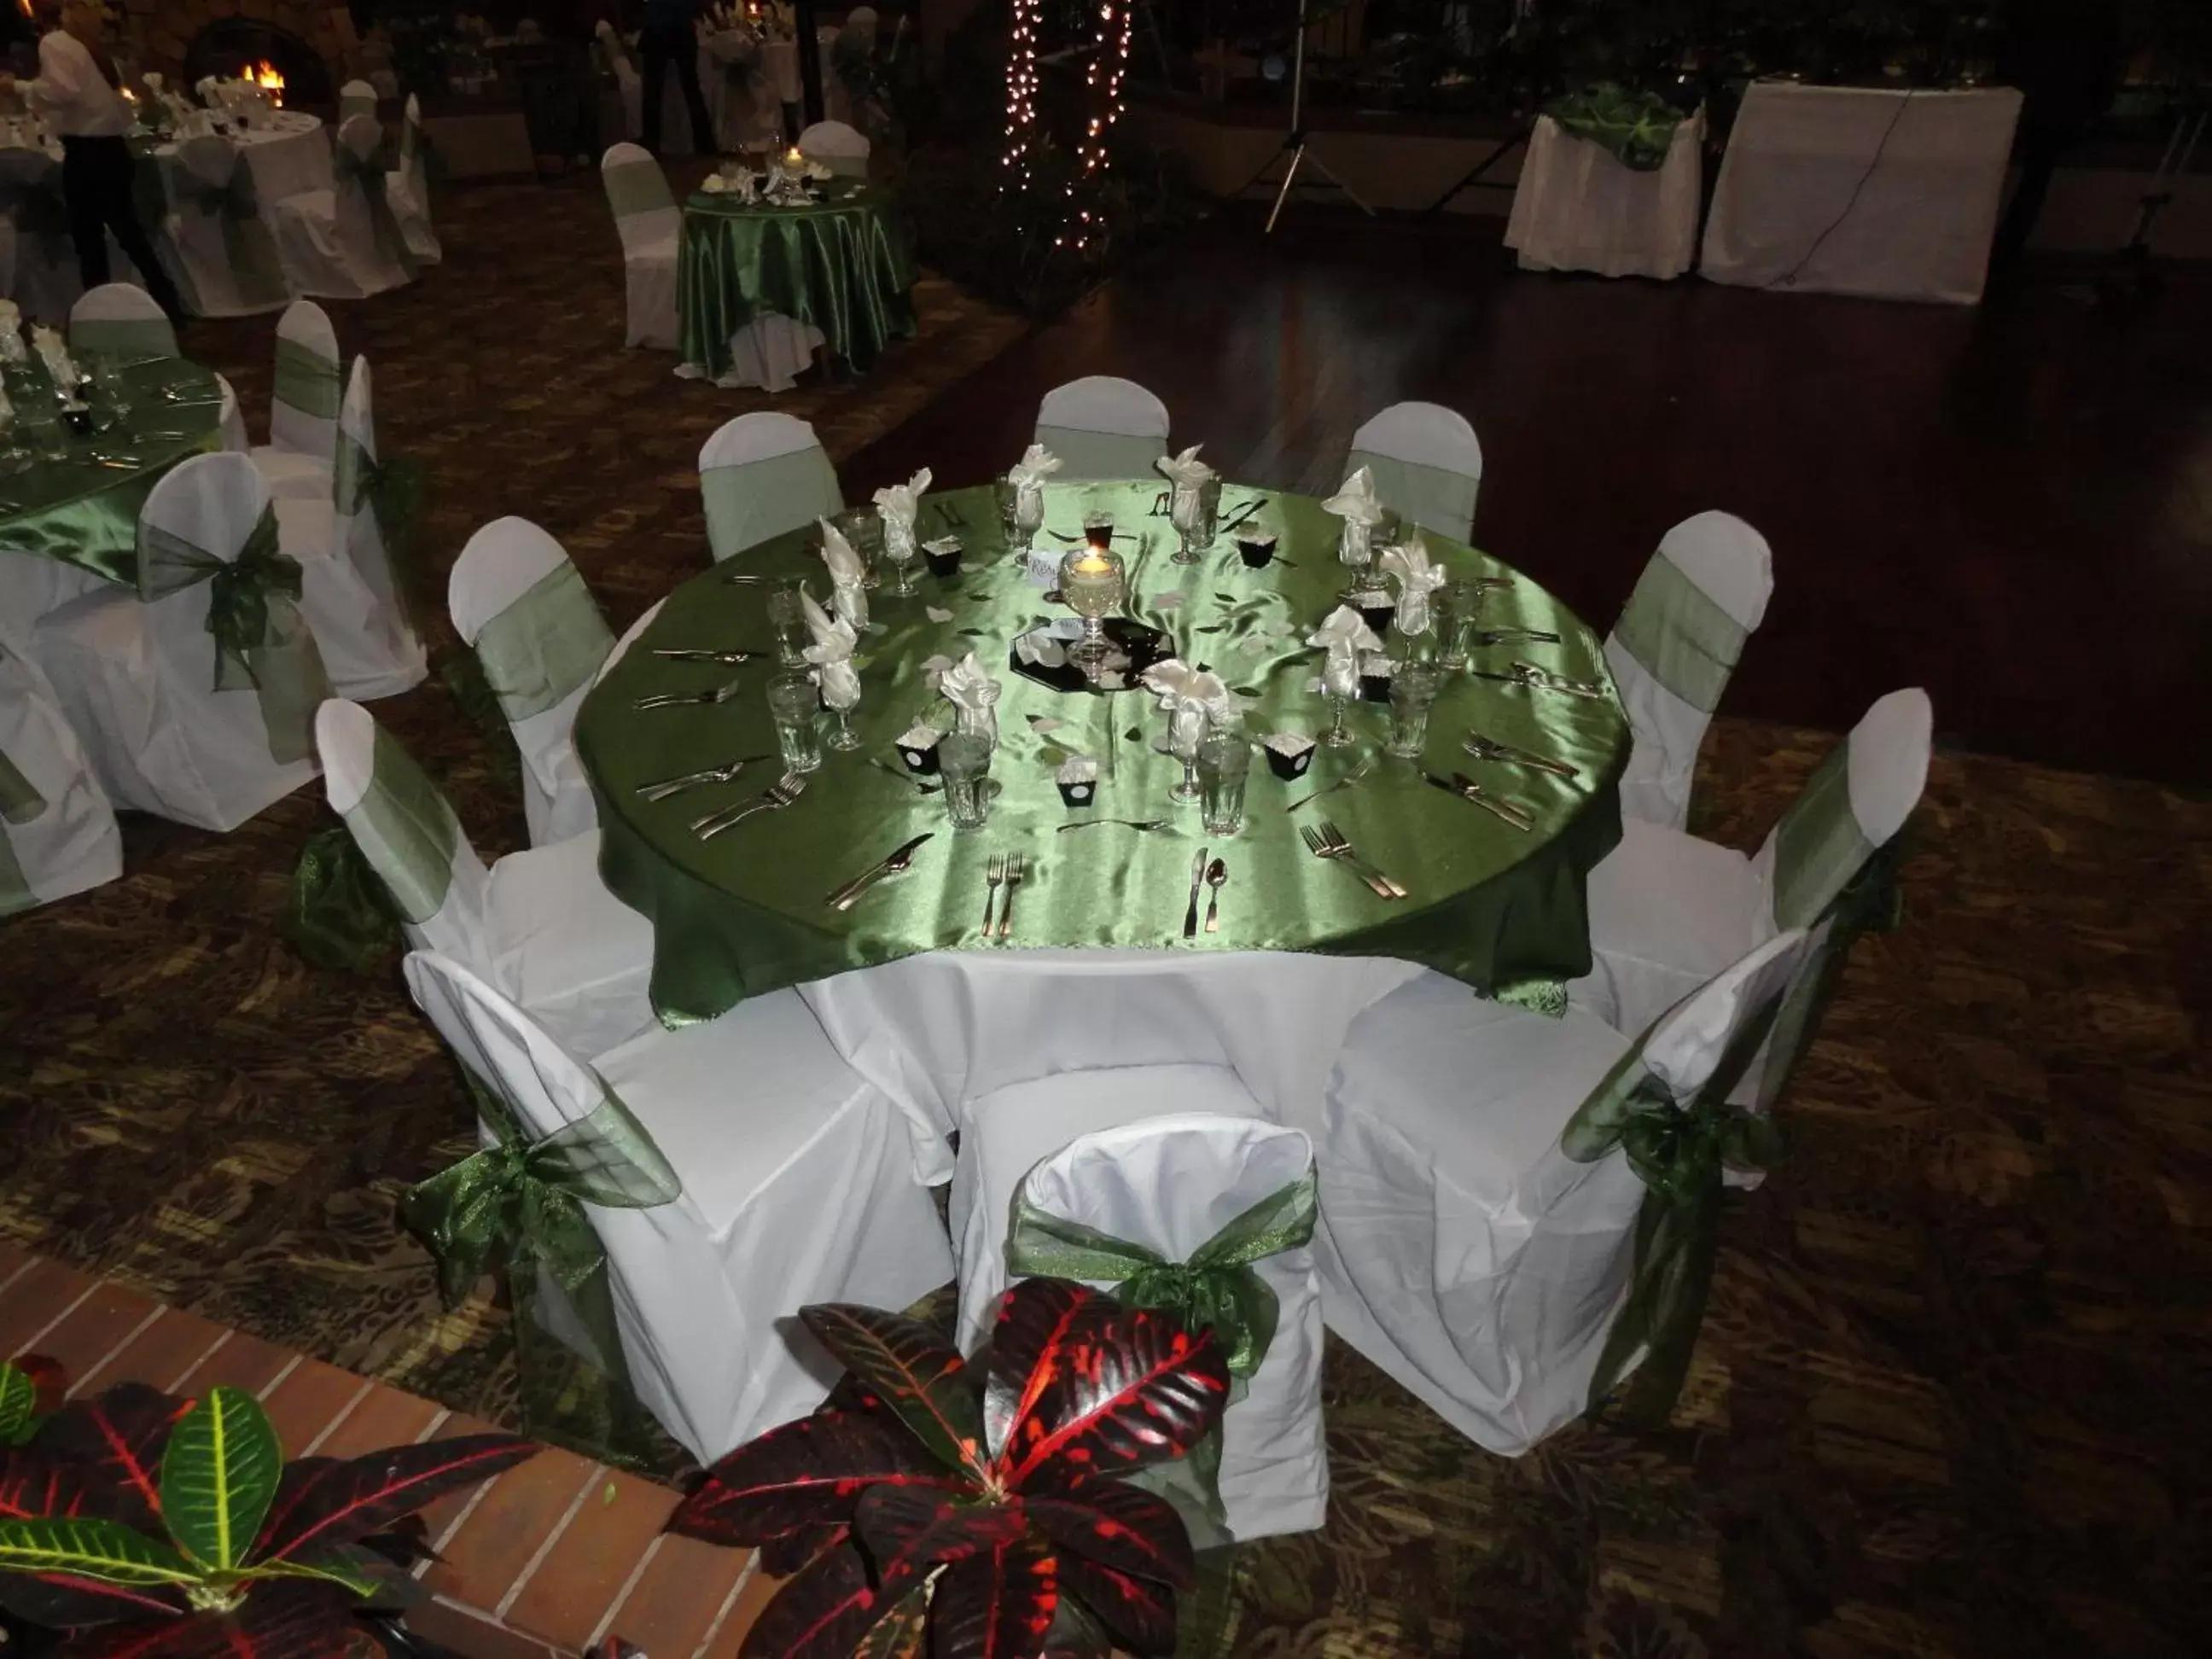 Banquet/Function facilities, Banquet Facilities in The Academy Hotel Colorado Springs